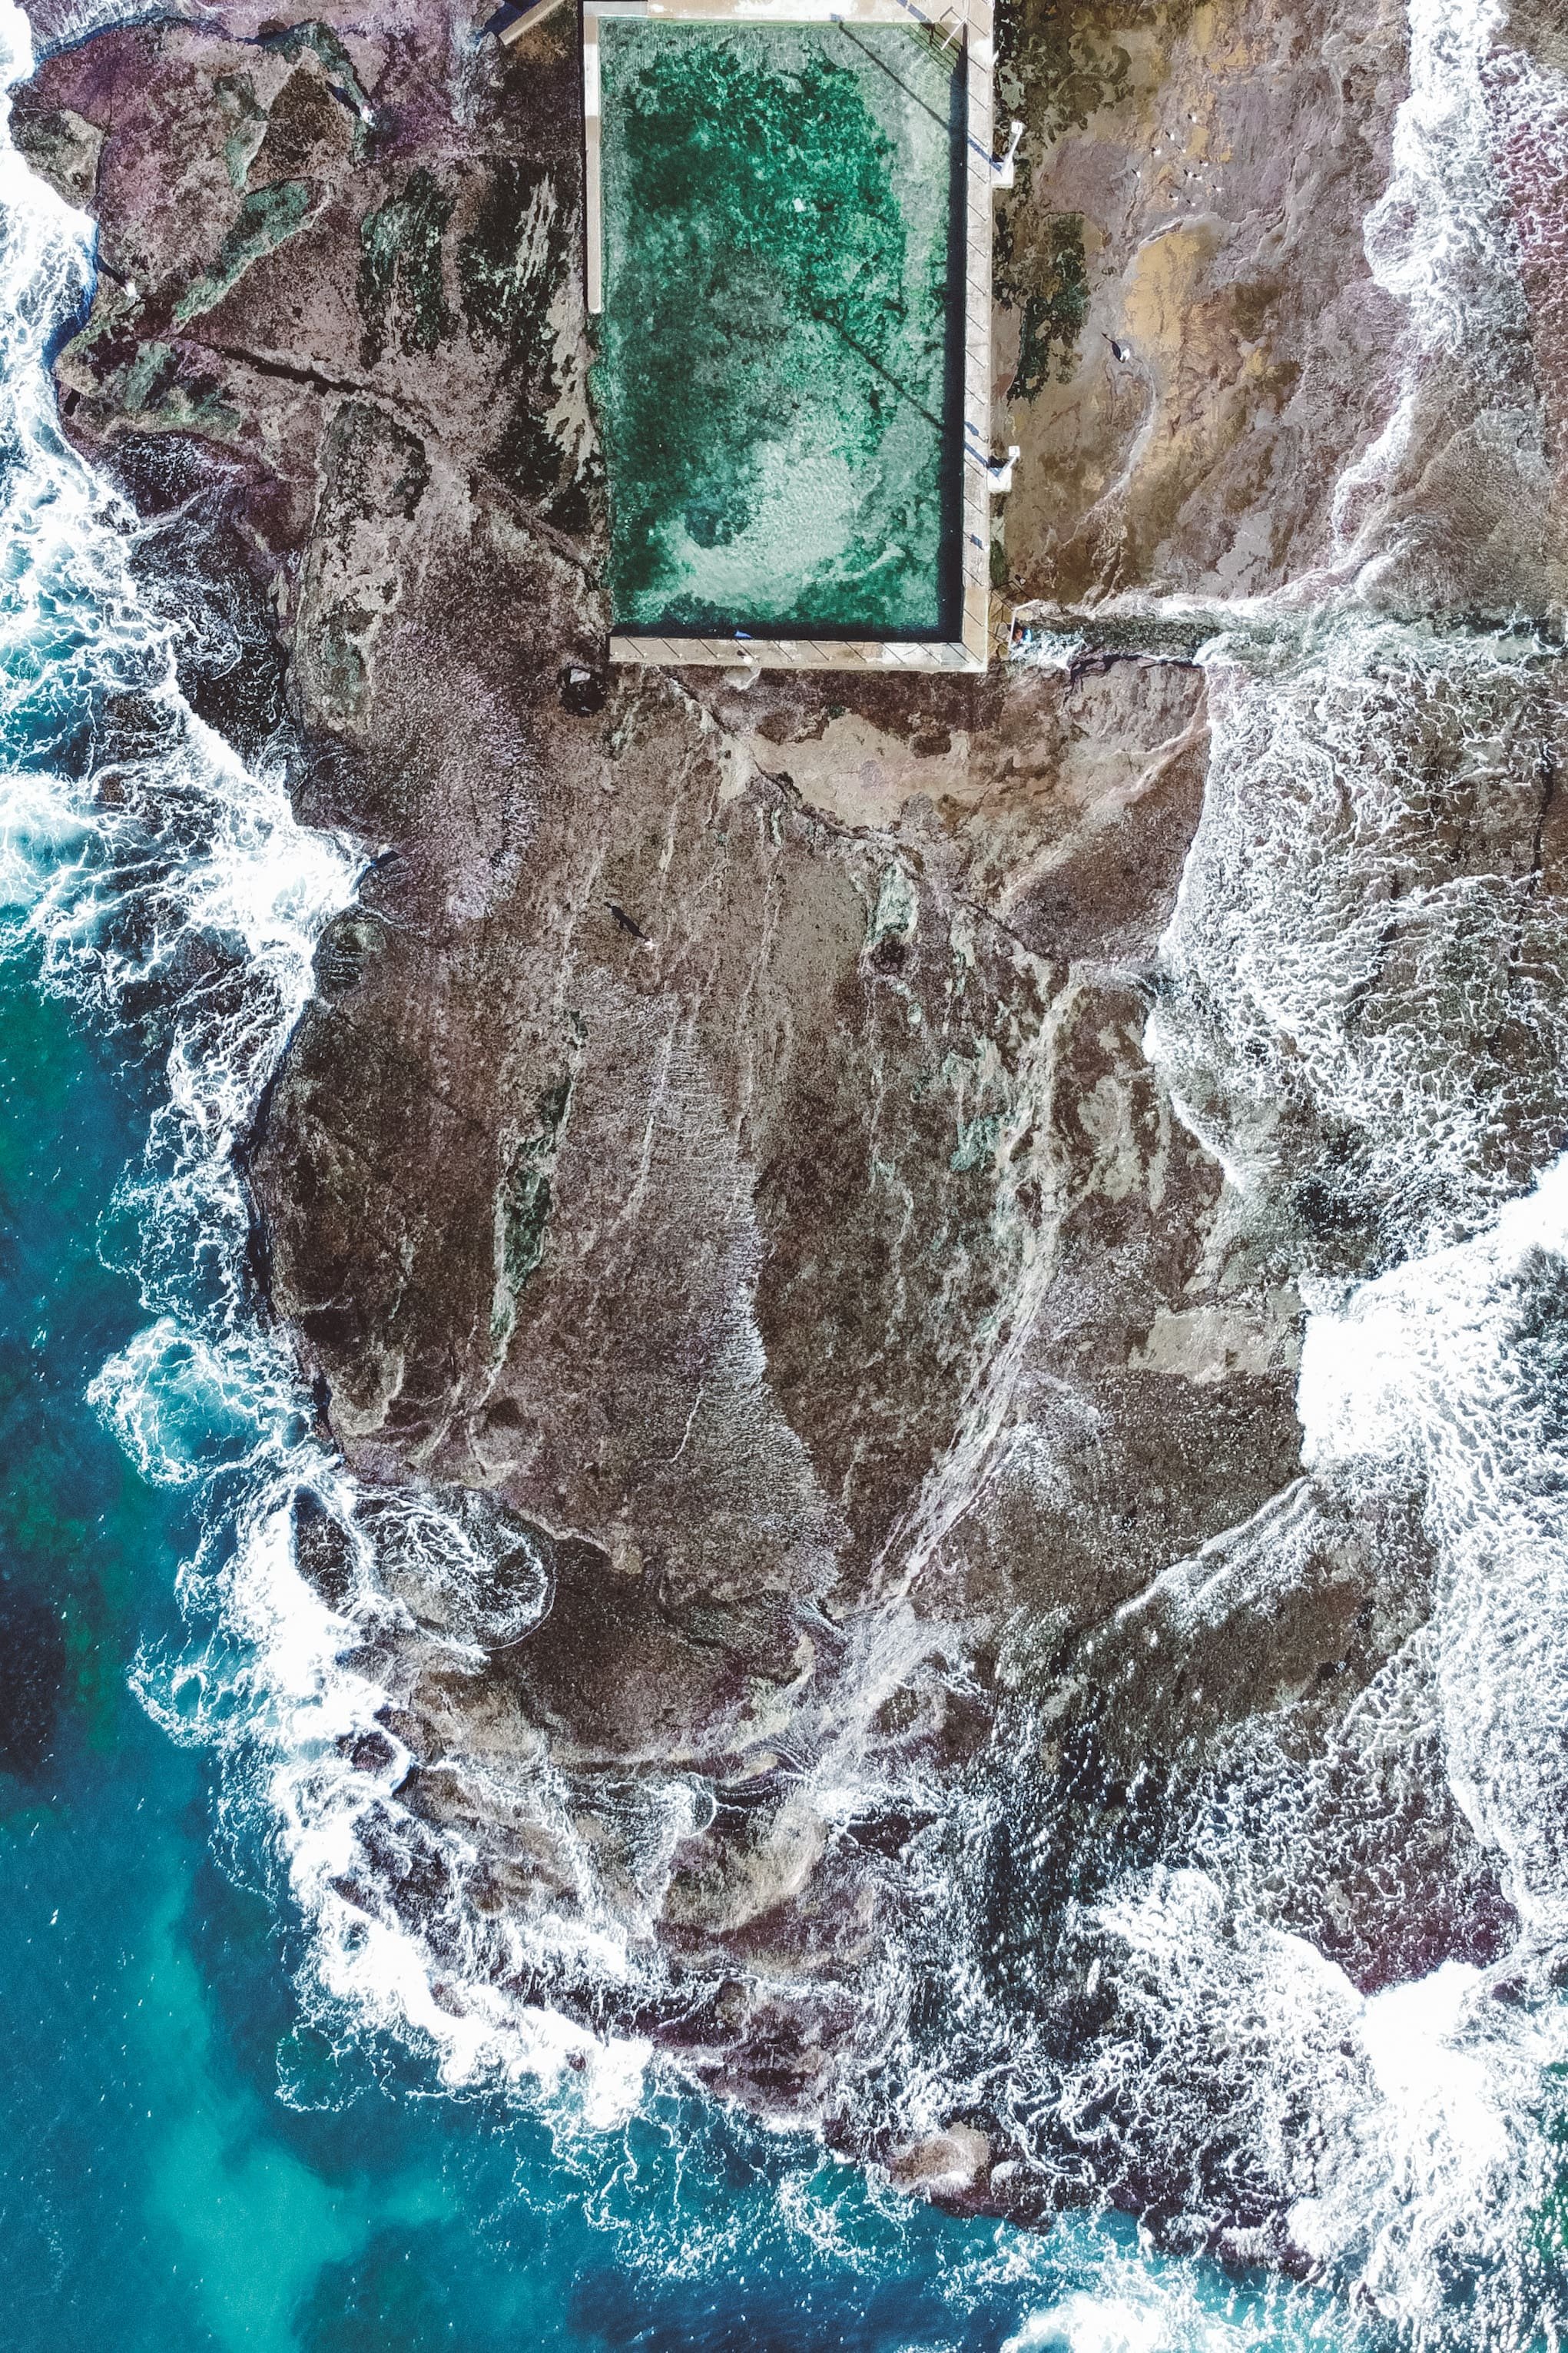 La piscine de Mona Vale vue depuis mon drone - Sydney - Nouvelle-Galles-du-Sud (NSW) - Australie